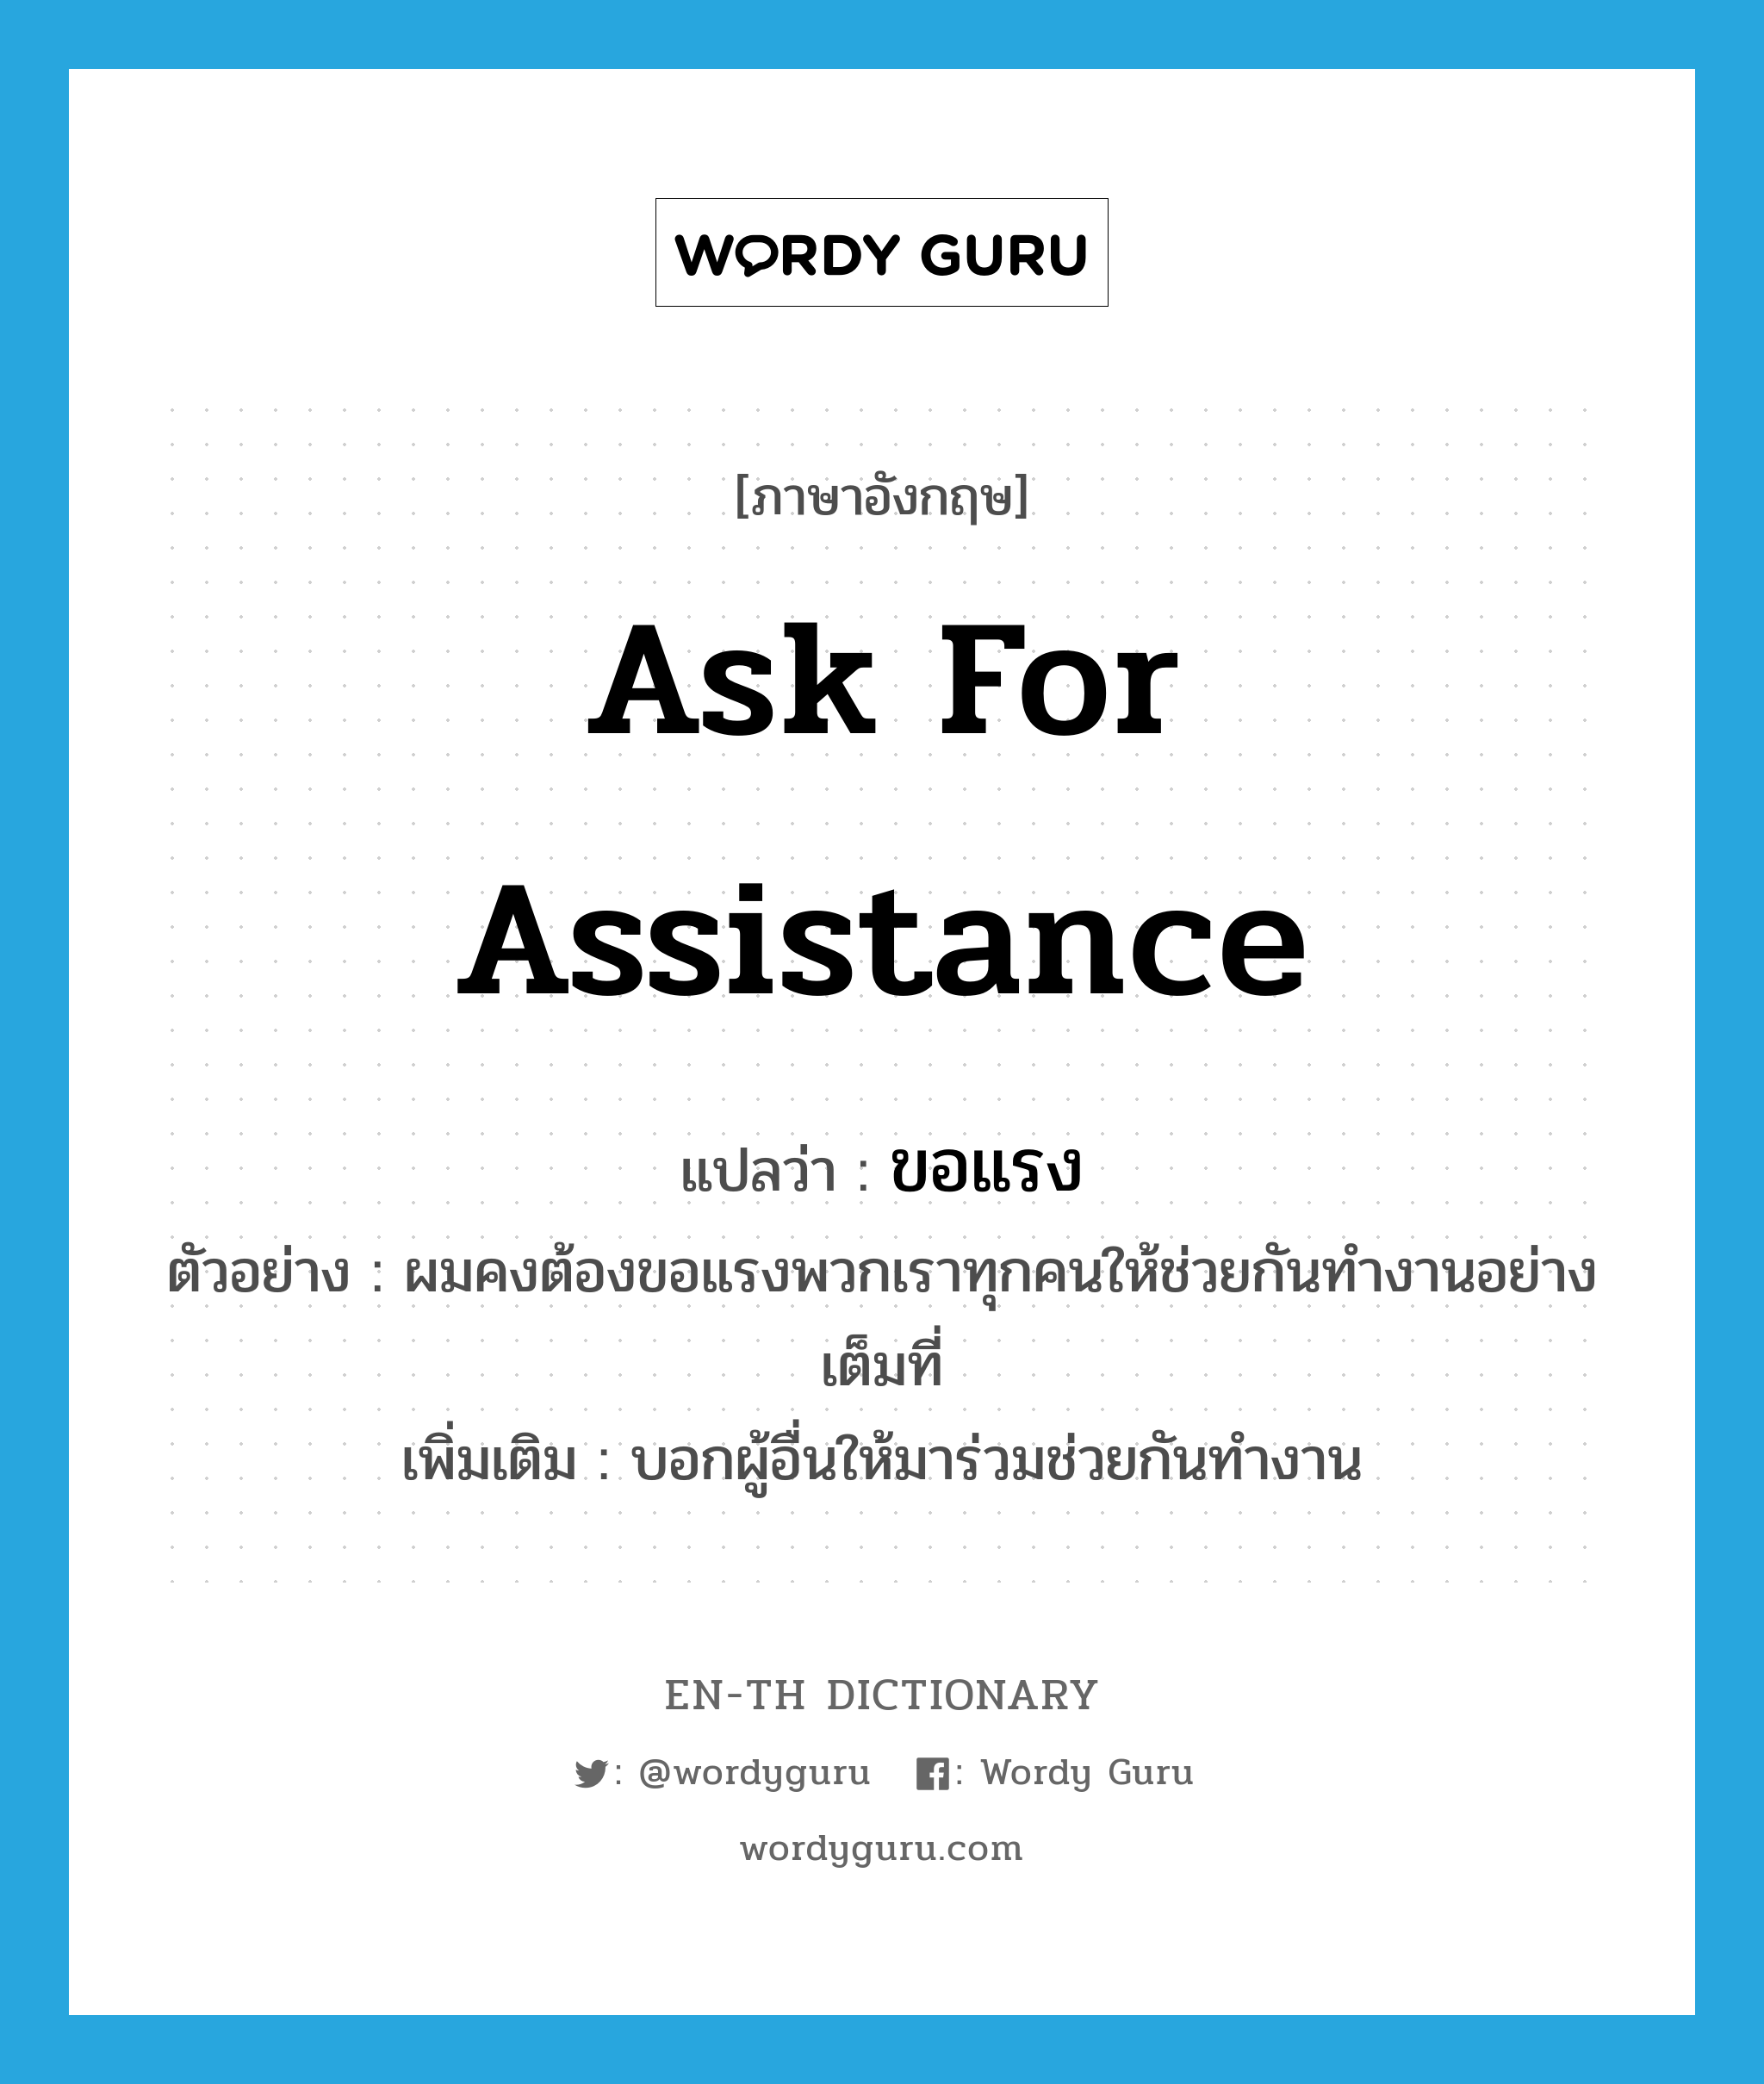 ask for assistance แปลว่า?, คำศัพท์ภาษาอังกฤษ ask for assistance แปลว่า ขอแรง ประเภท V ตัวอย่าง ผมคงต้องขอแรงพวกเราทุกคนให้ช่วยกันทำงานอย่างเต็มที่ เพิ่มเติม บอกผู้อื่นให้มาร่วมช่วยกันทำงาน หมวด V